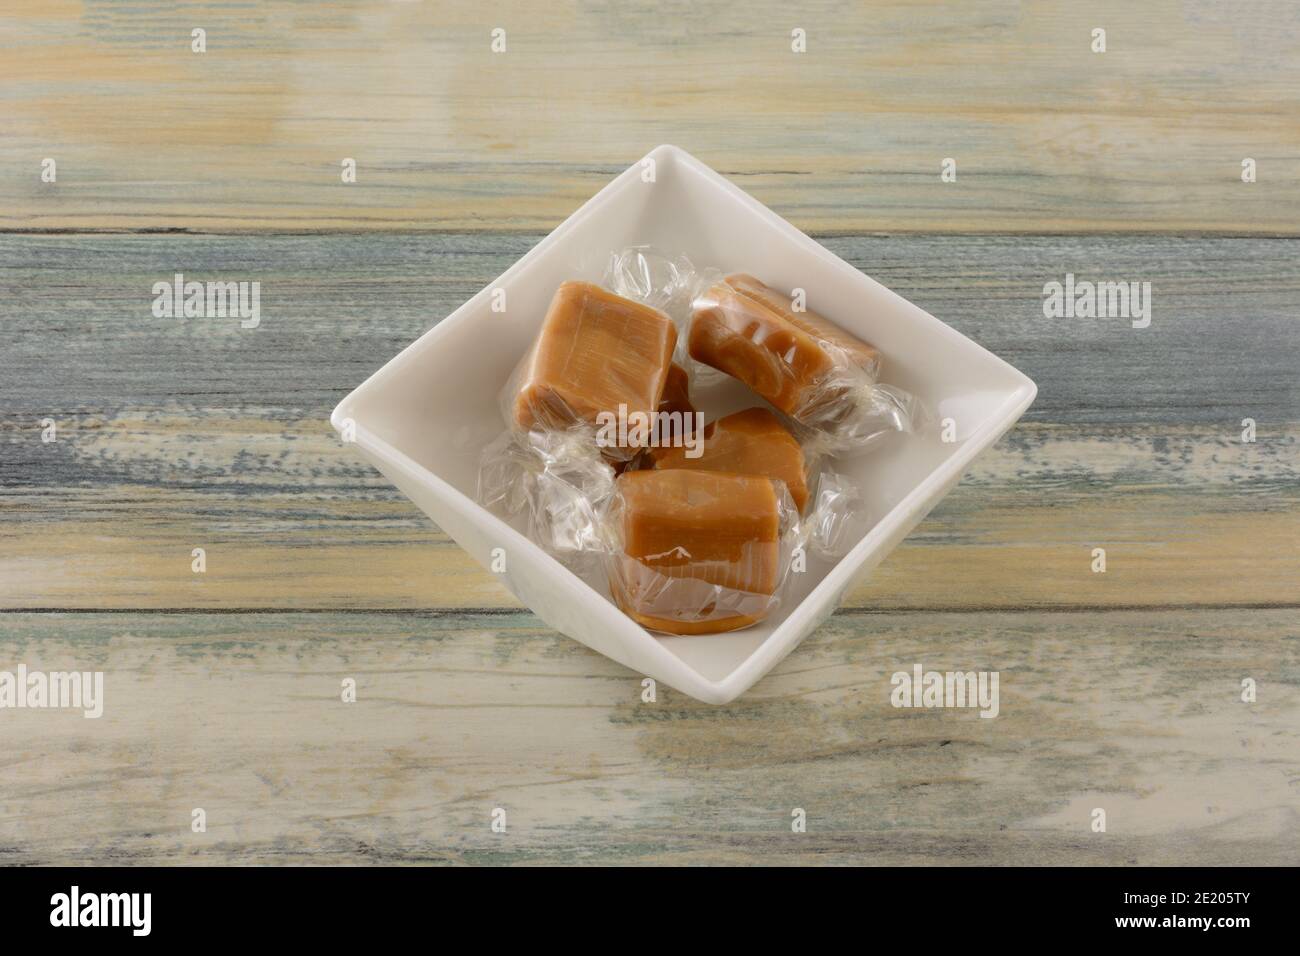 Gesalzene Karamell Süßigkeiten Stücke in klaren transparenten Süßigkeiten Wrapper n Weiße Süßigkeitenschale auf dem Tisch Stockfoto